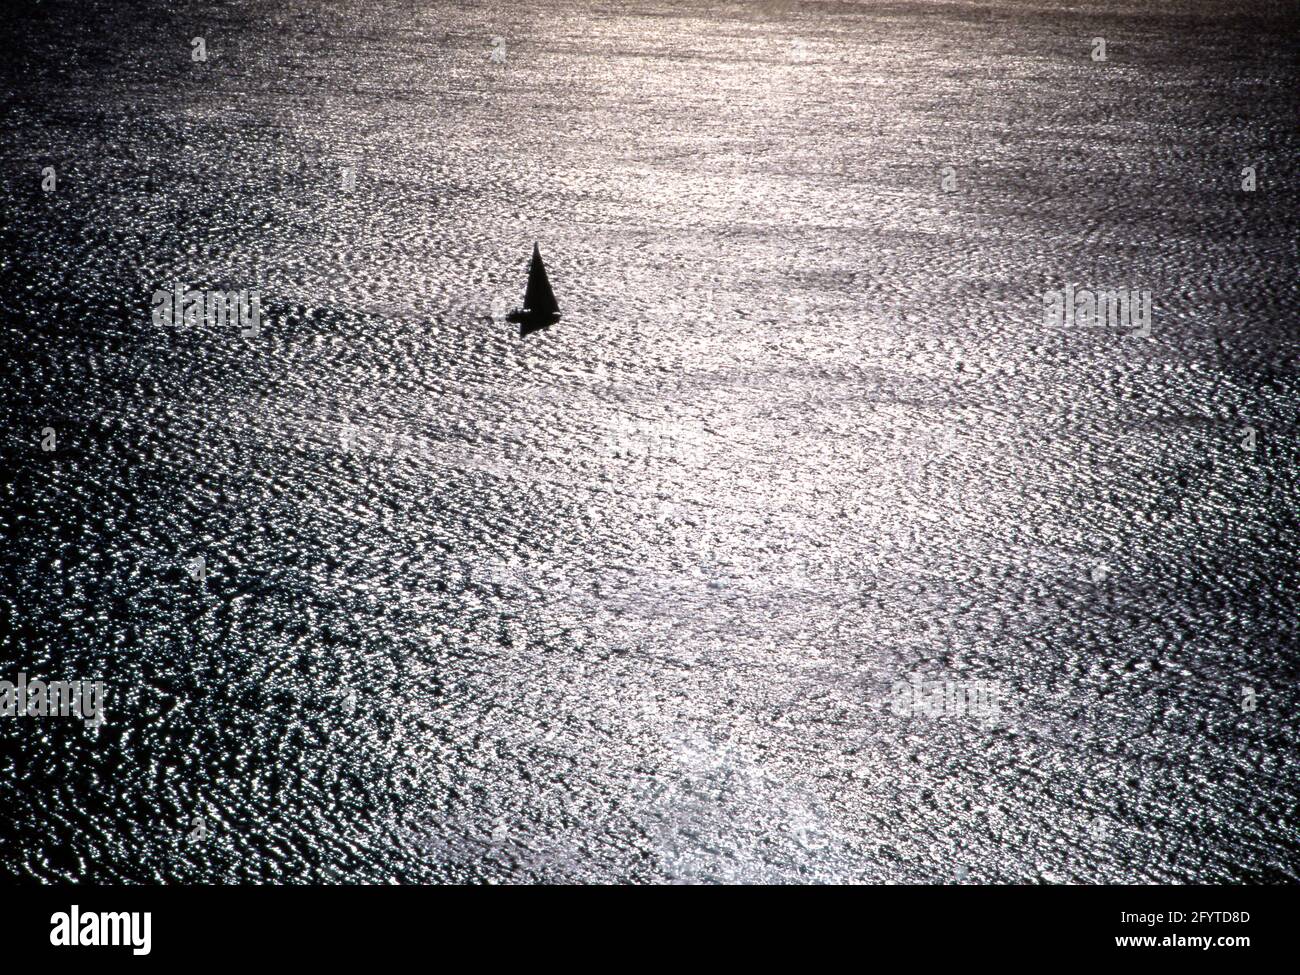 Controluce sul mare con barca a vela in navigazione Stock Photo